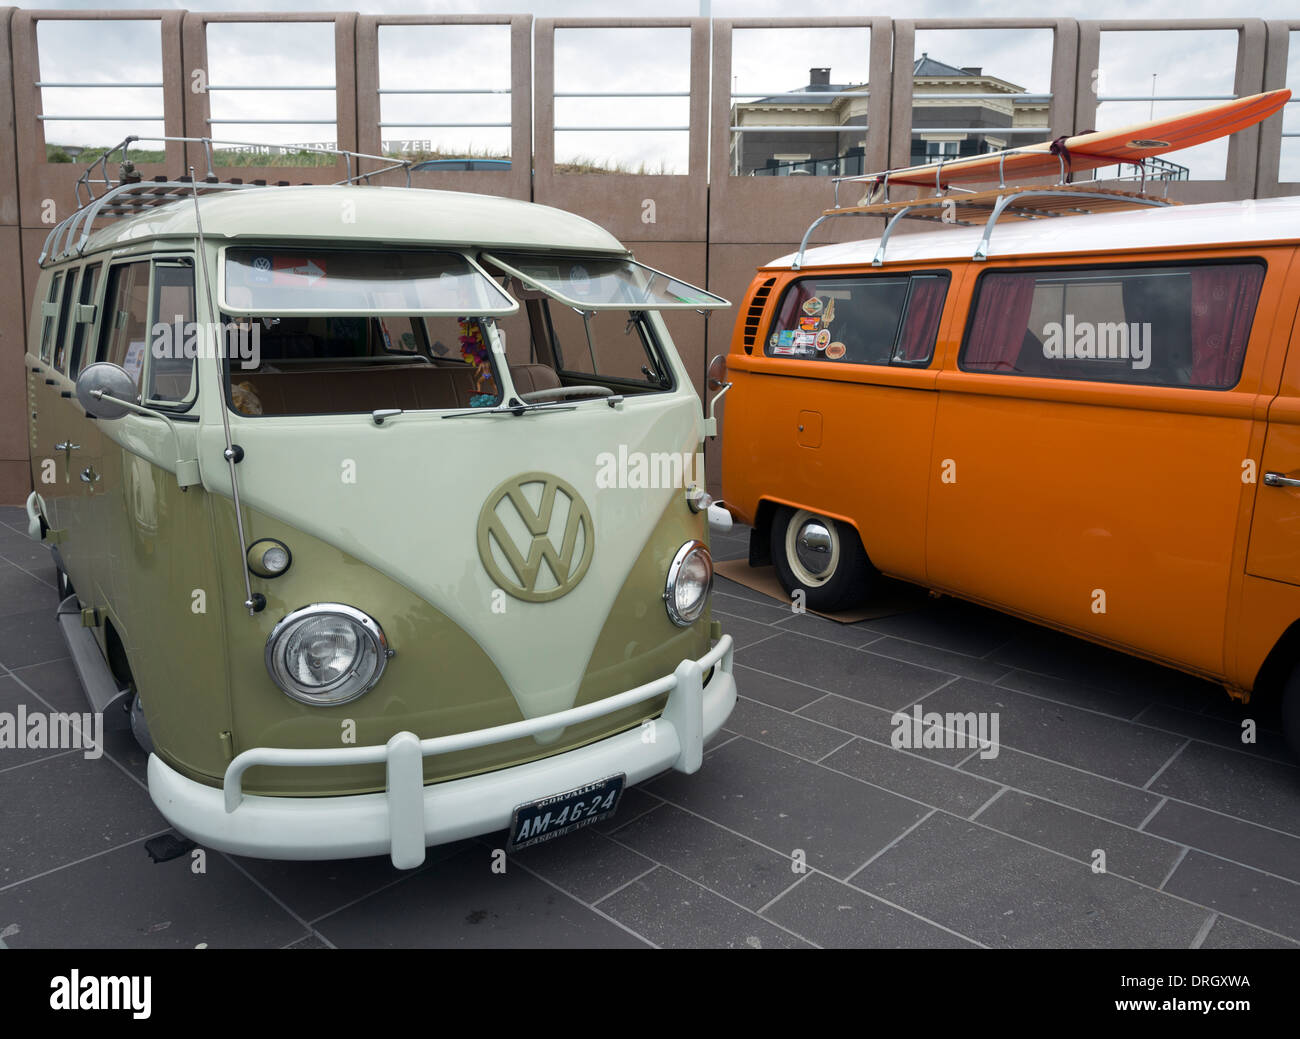 Classic VW Volkswagen camper vans on display at Noorderstrand beach The  Hague (Den Haag) Netherlands Stock Photo - Alamy